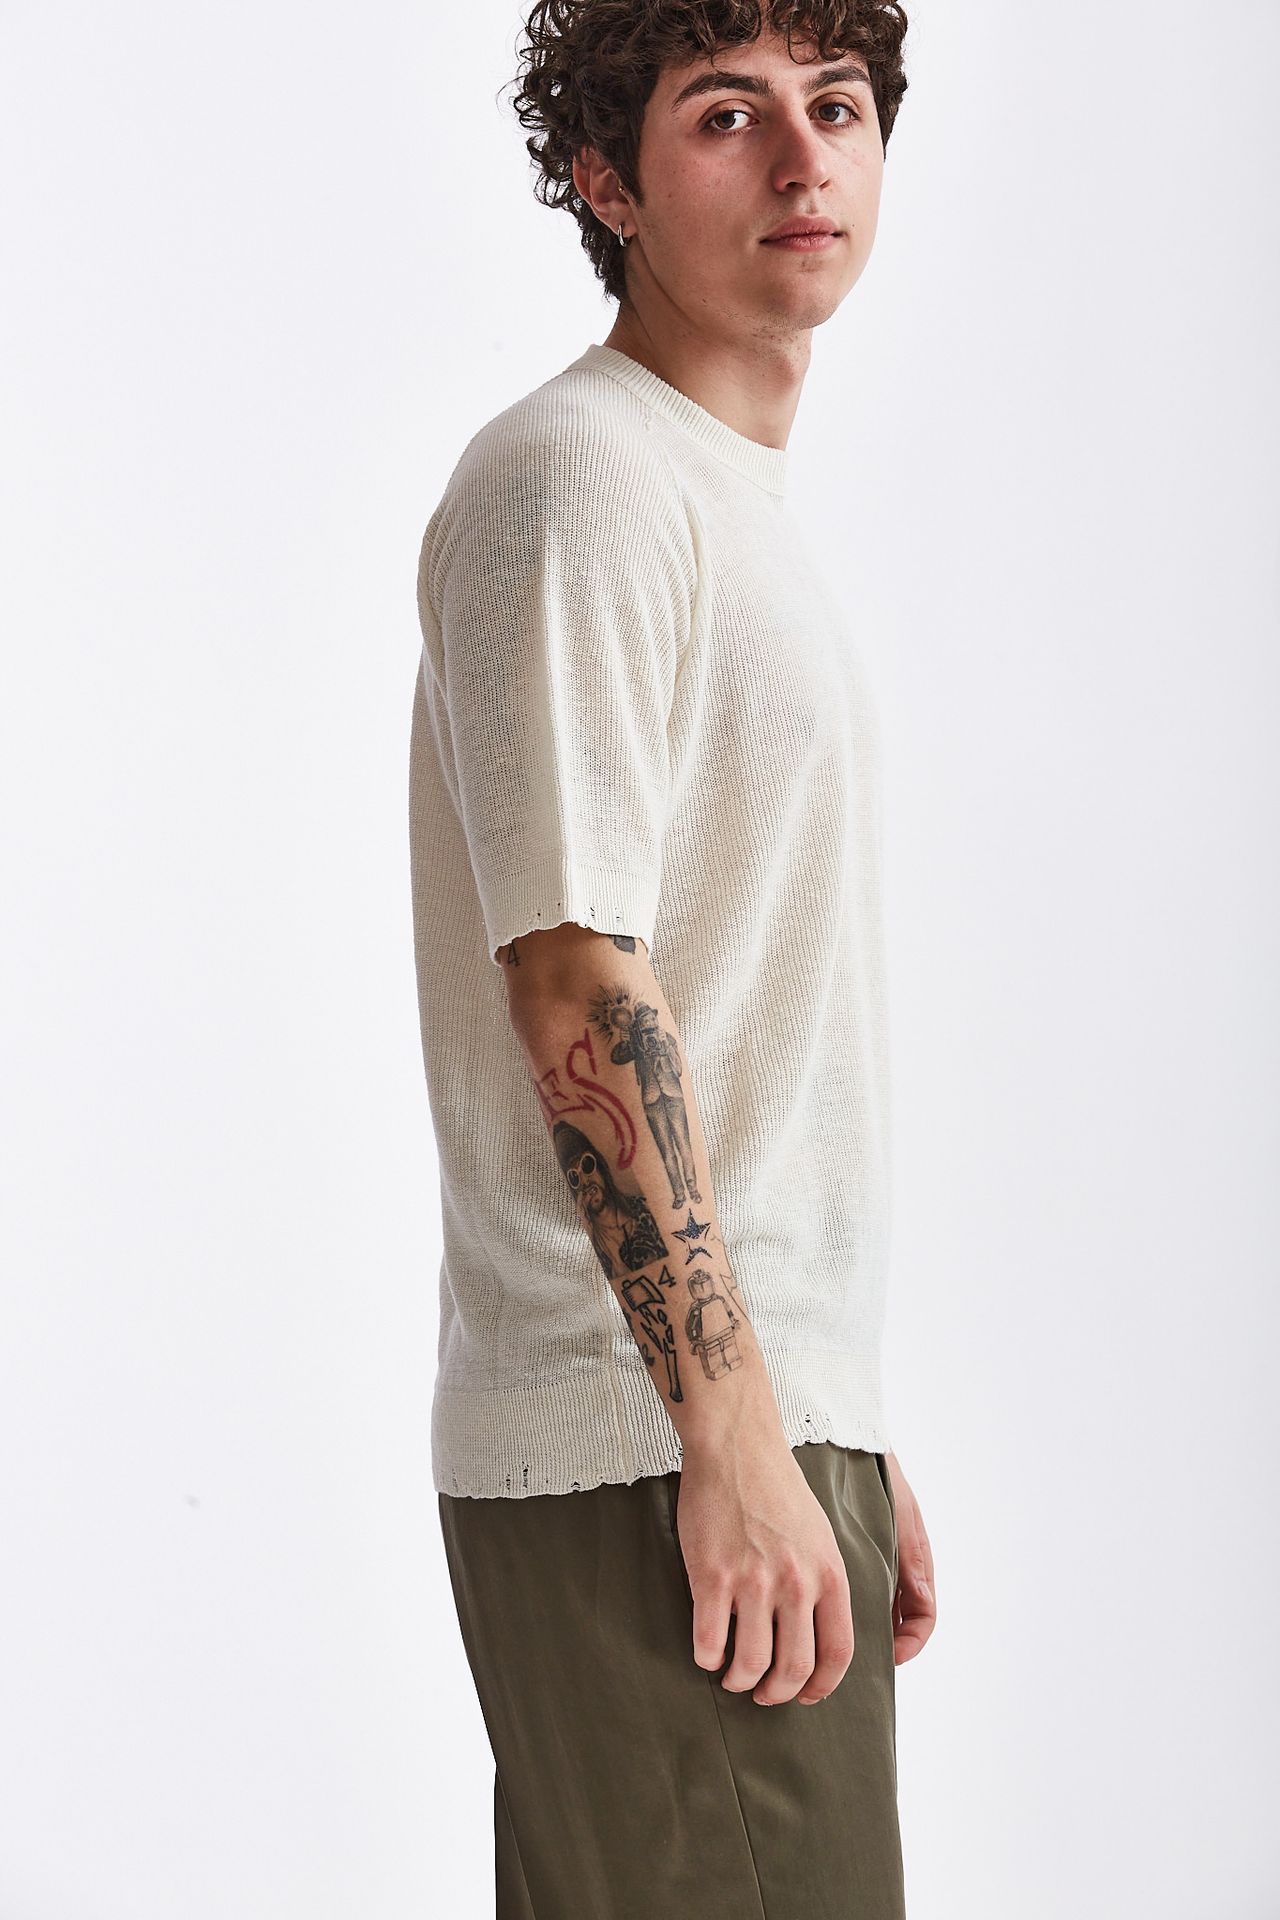 T-shirt in cotone/lino bianco